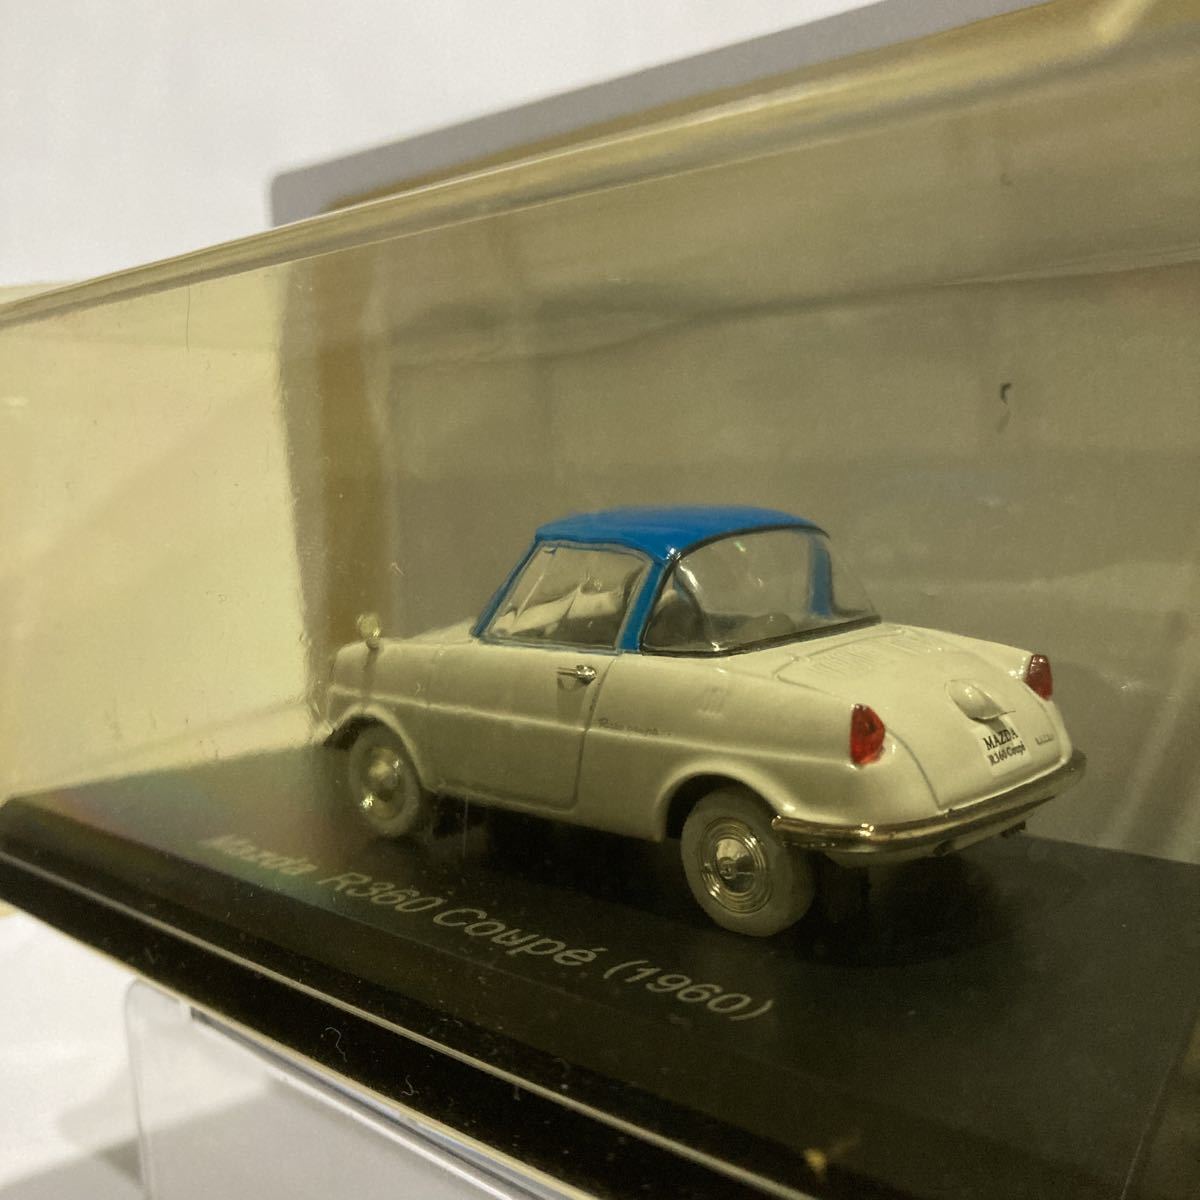 アシェット 国産名車コレクション 1/43 vol.33 Mazda R360 Coupe 1960年 マツダ クーペ 旧車 ミニカー モデルカー 昭和レトロ_画像4